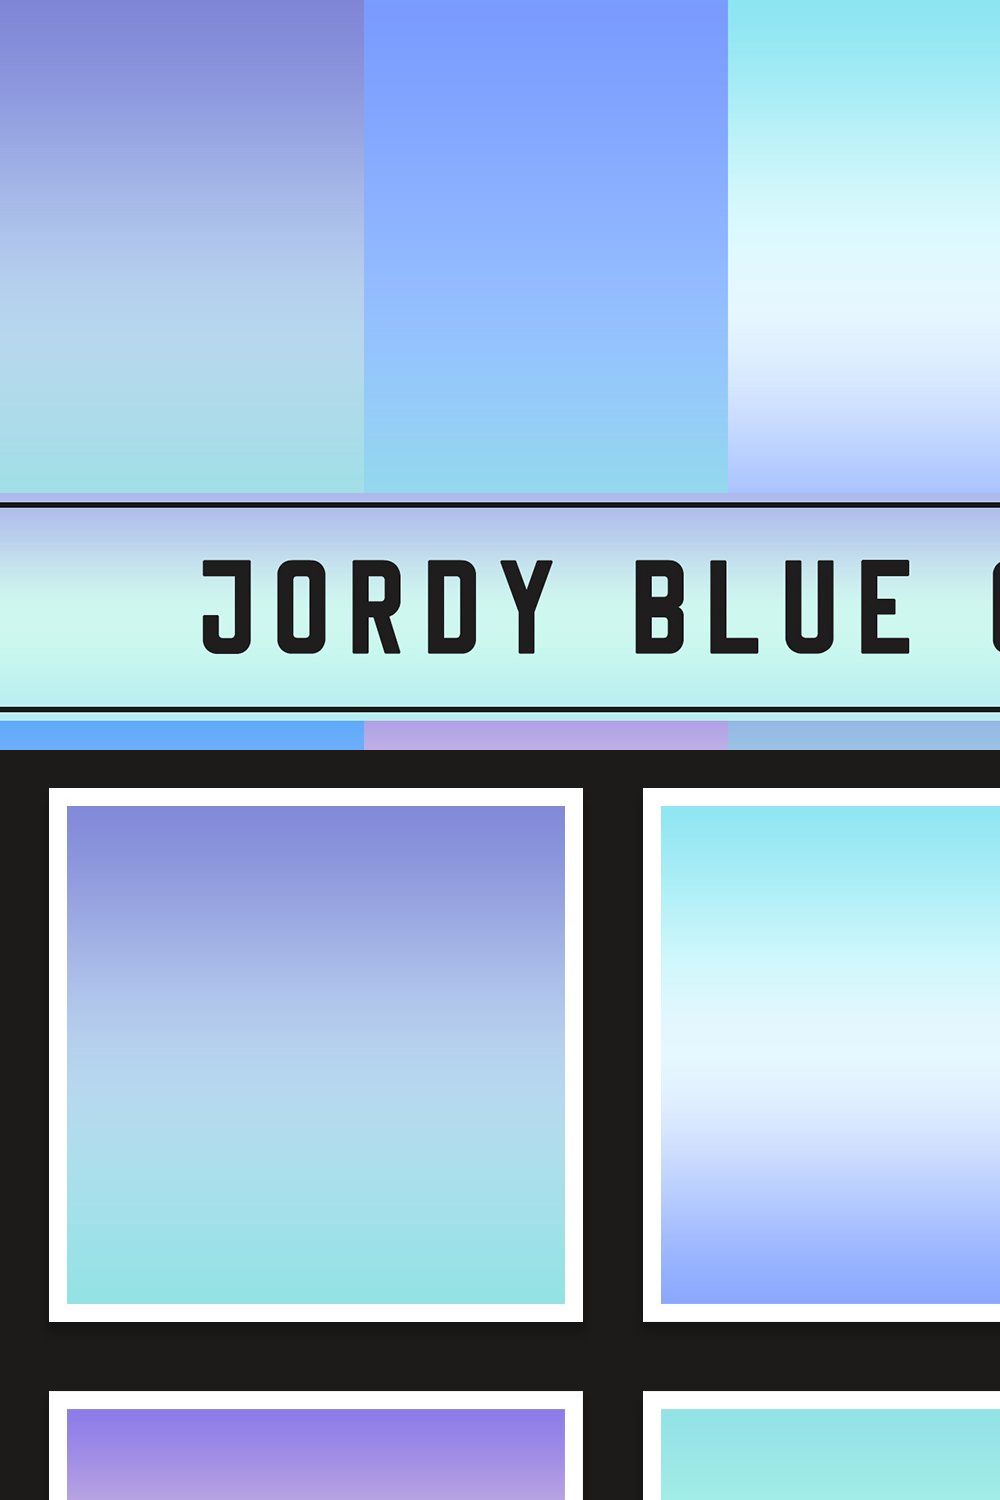 Jordy Blue Gradients pinterest preview image.